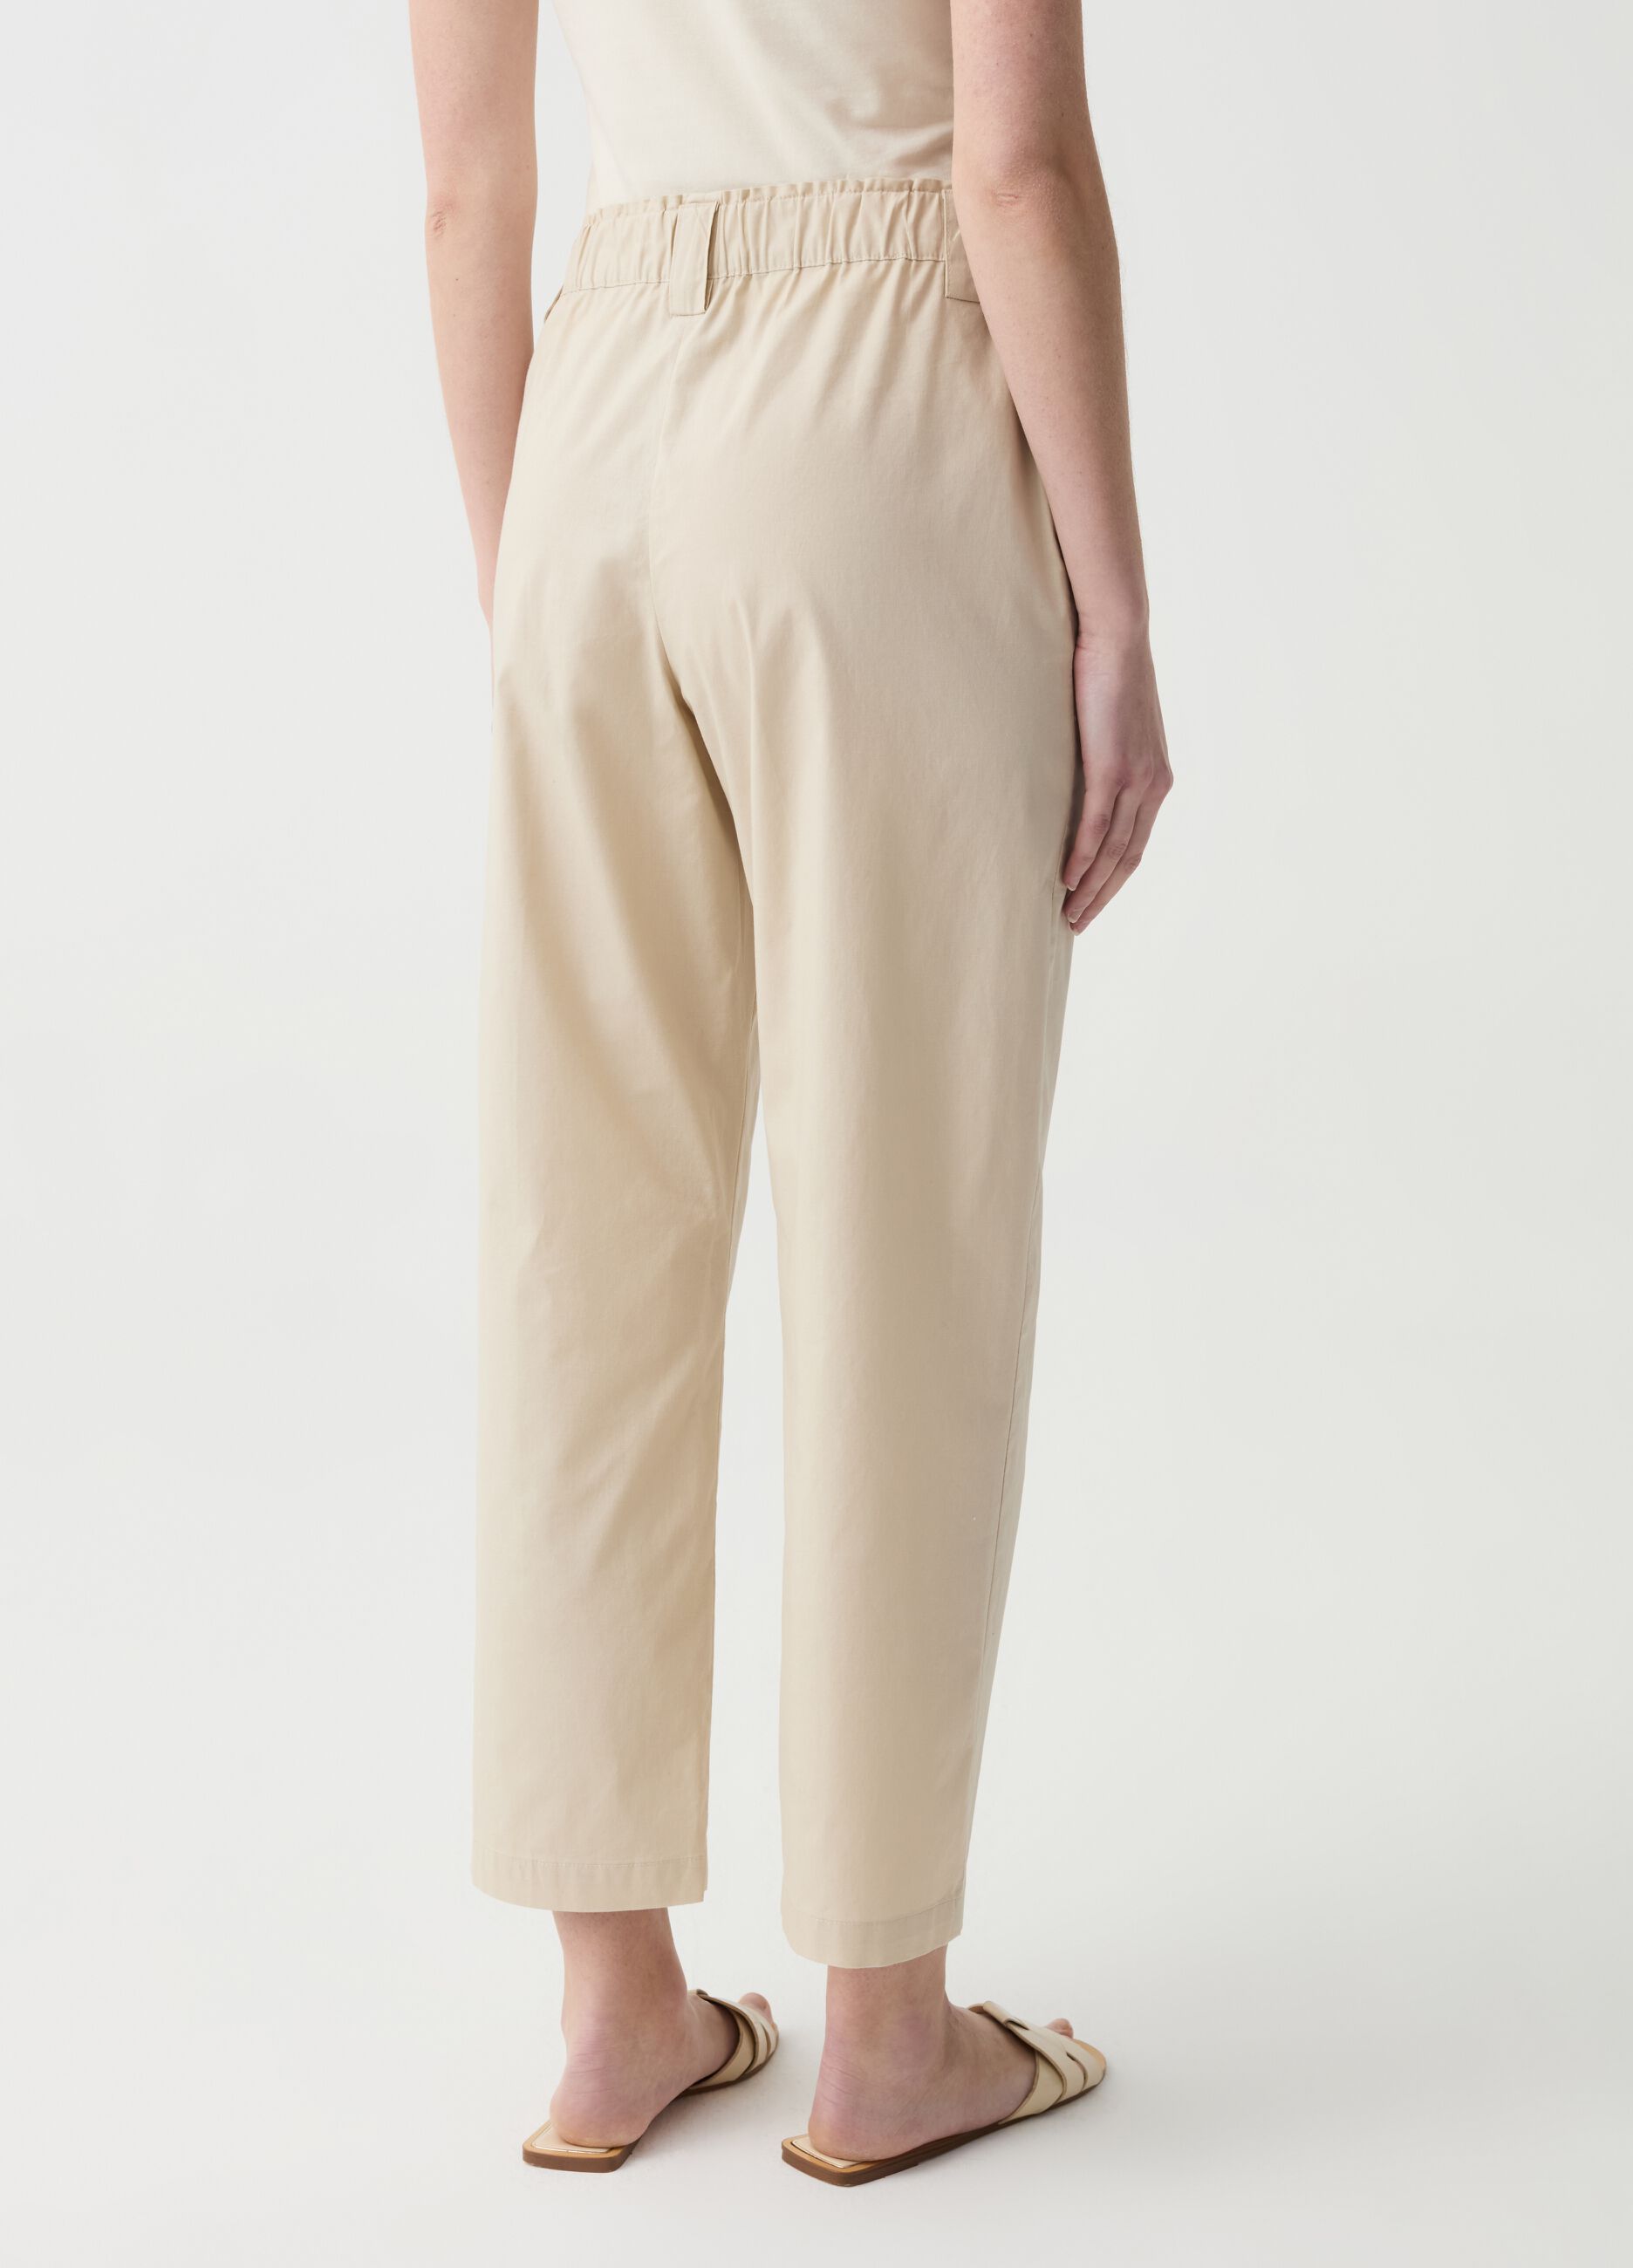 Pantalone crop wide leg in cotone stretch